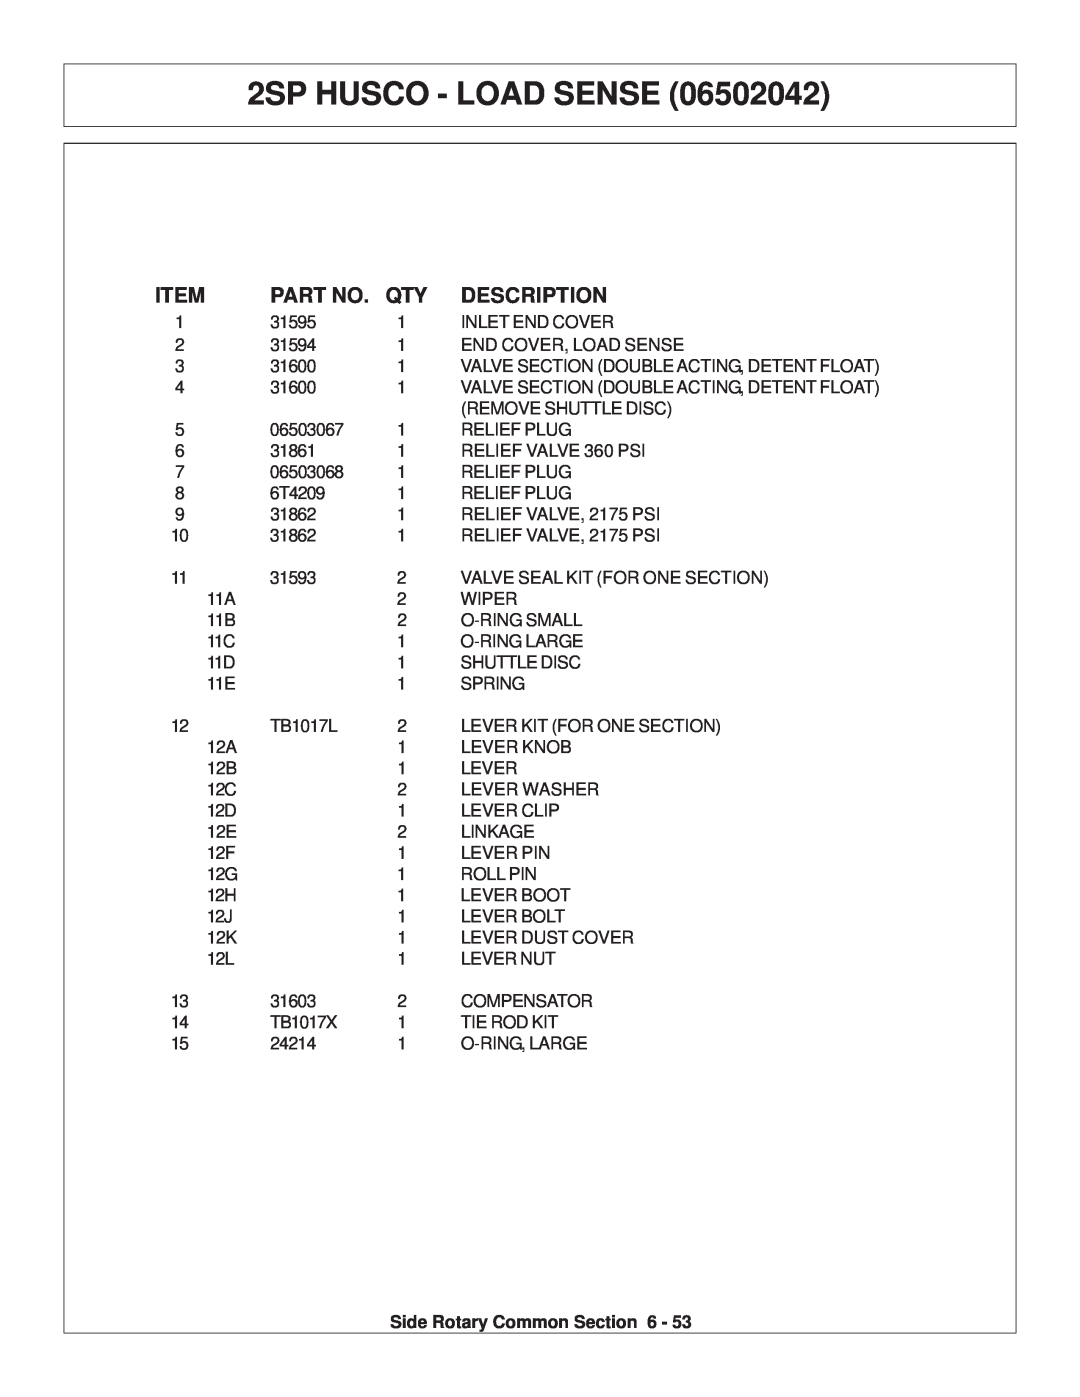 Tiger Products Co., Ltd TS 100A manual 2SP HUSCO - LOAD SENSE, Description 